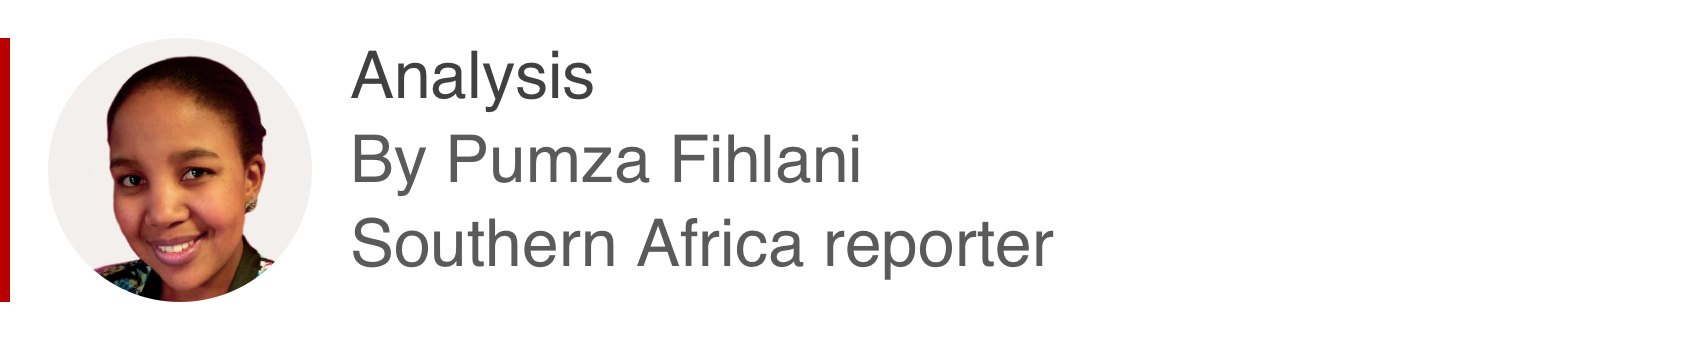 Аналитический ящик Пумзы Фихлани, репортера из южной части Африки